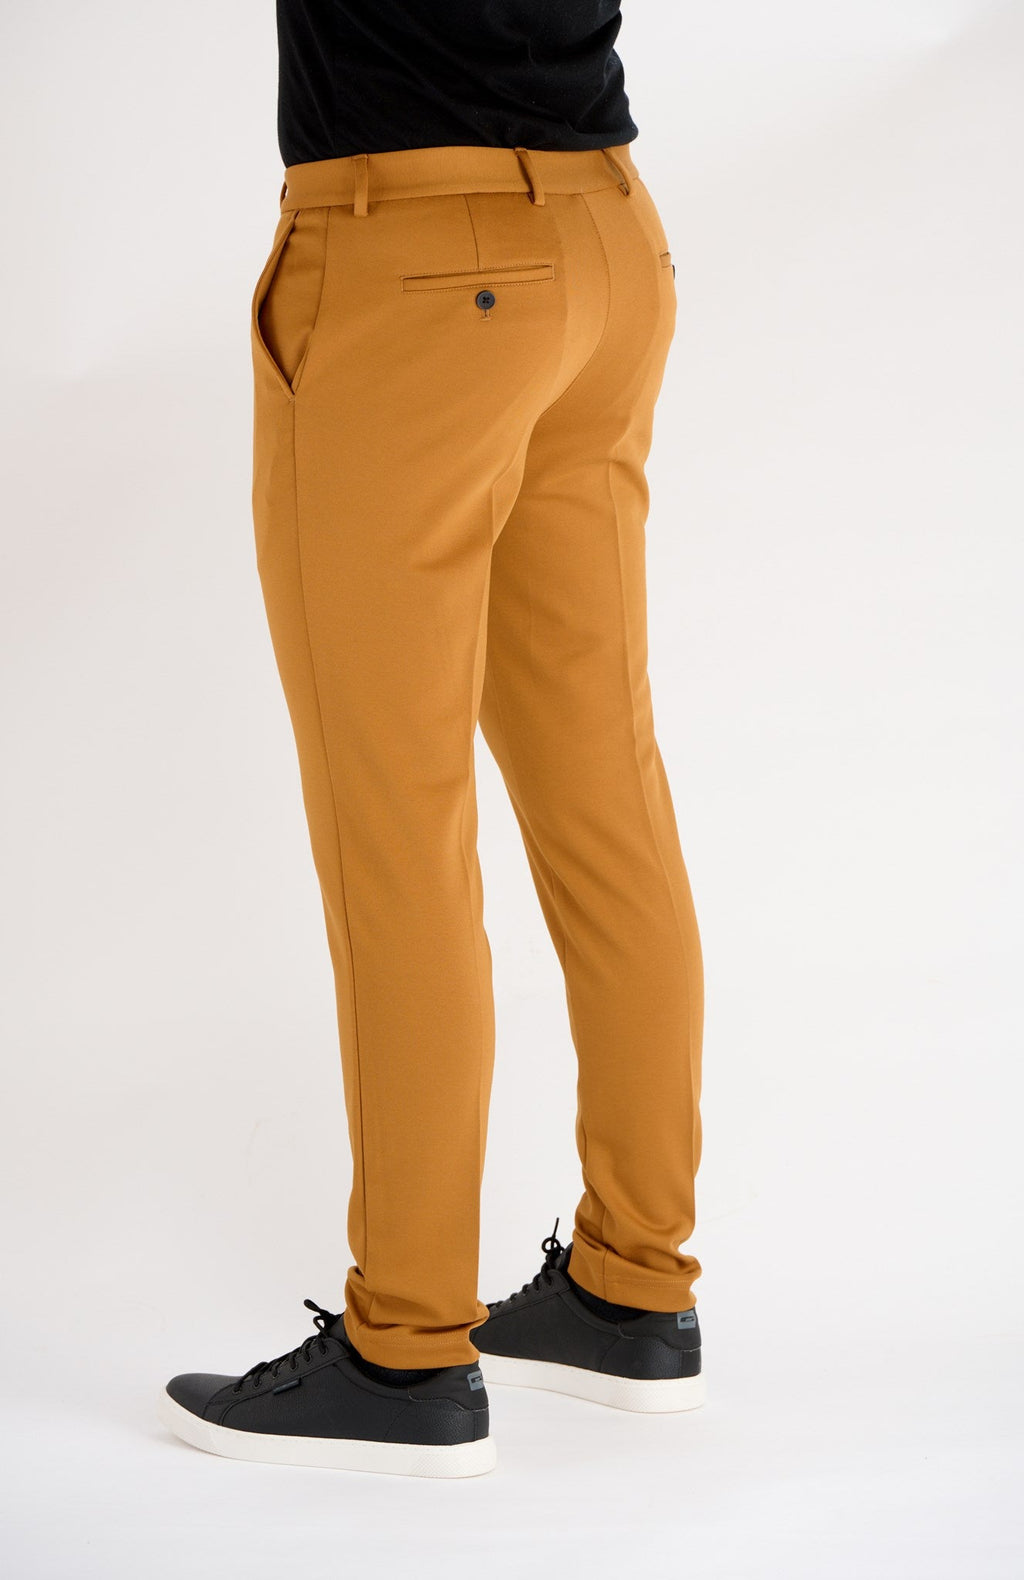 原始性能裤子 - 棕色